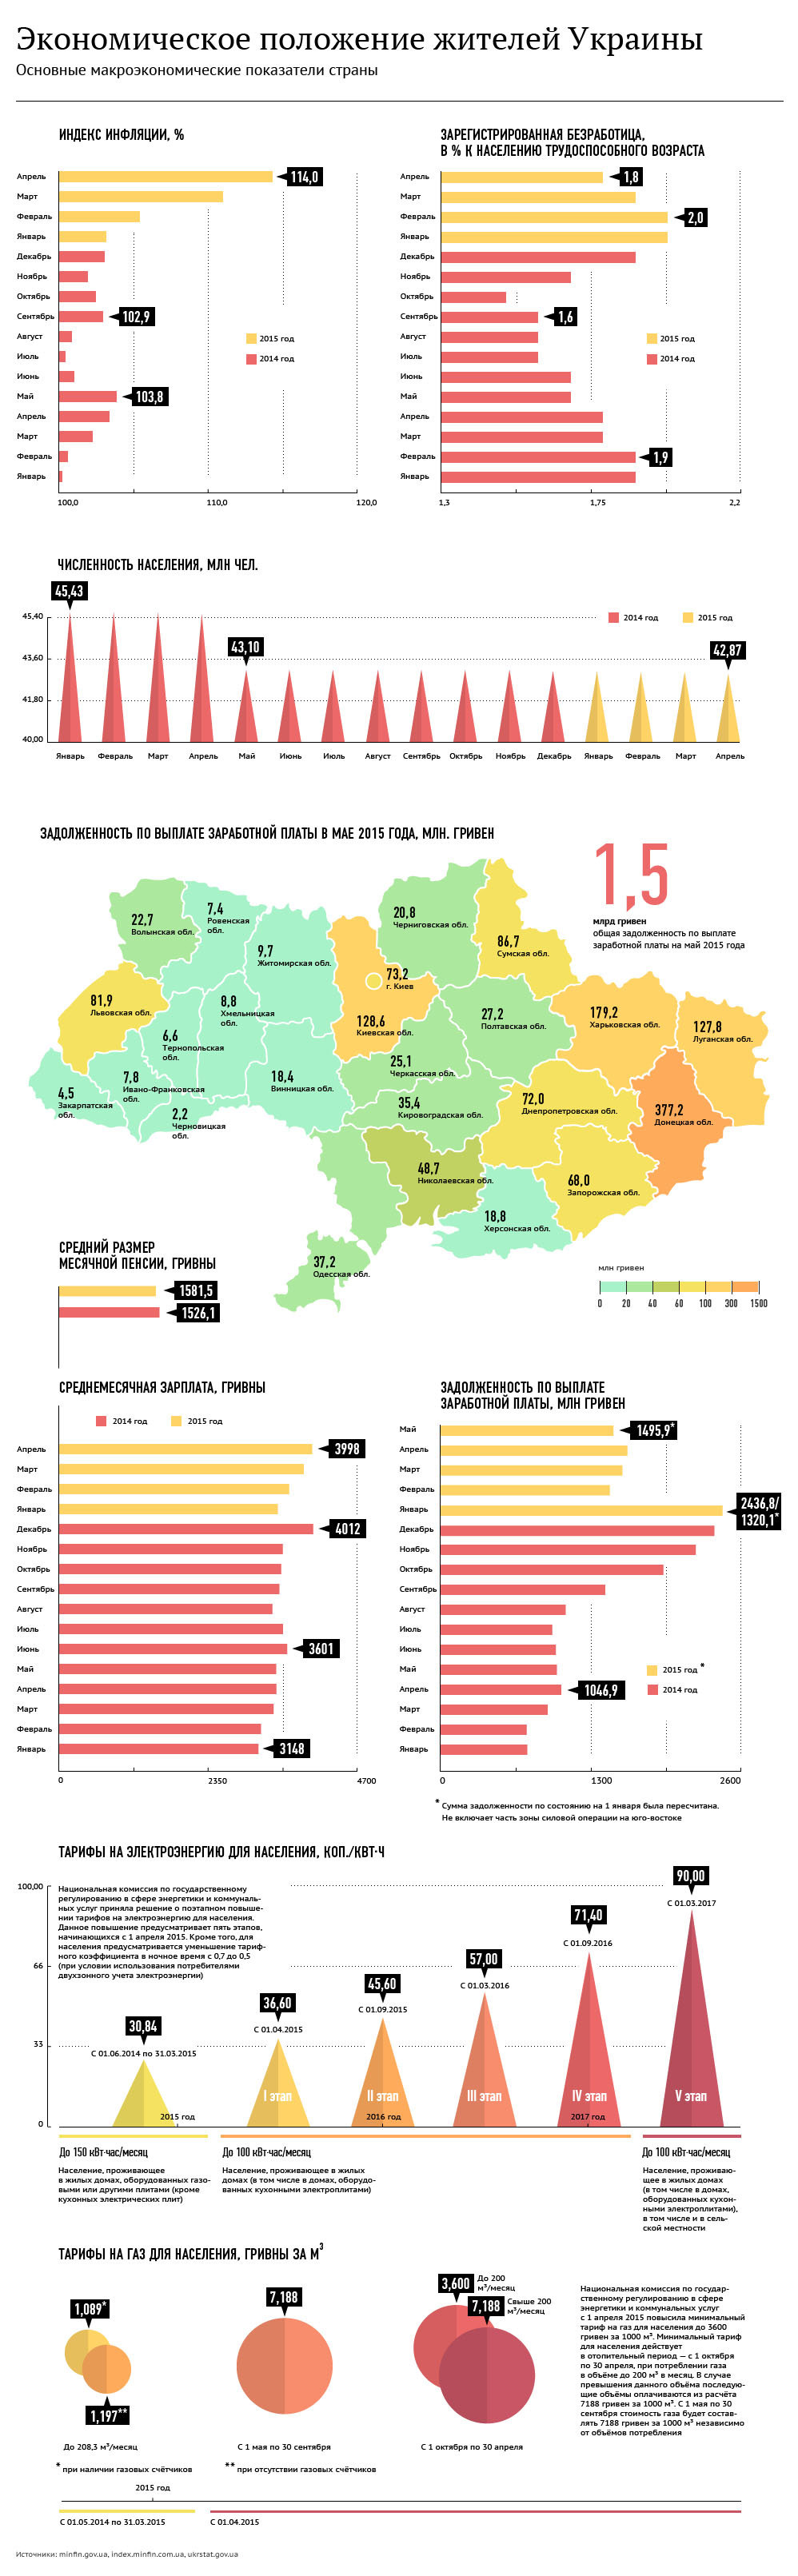 Экономическое положение жителей Украины - Sputnik Таджикистан